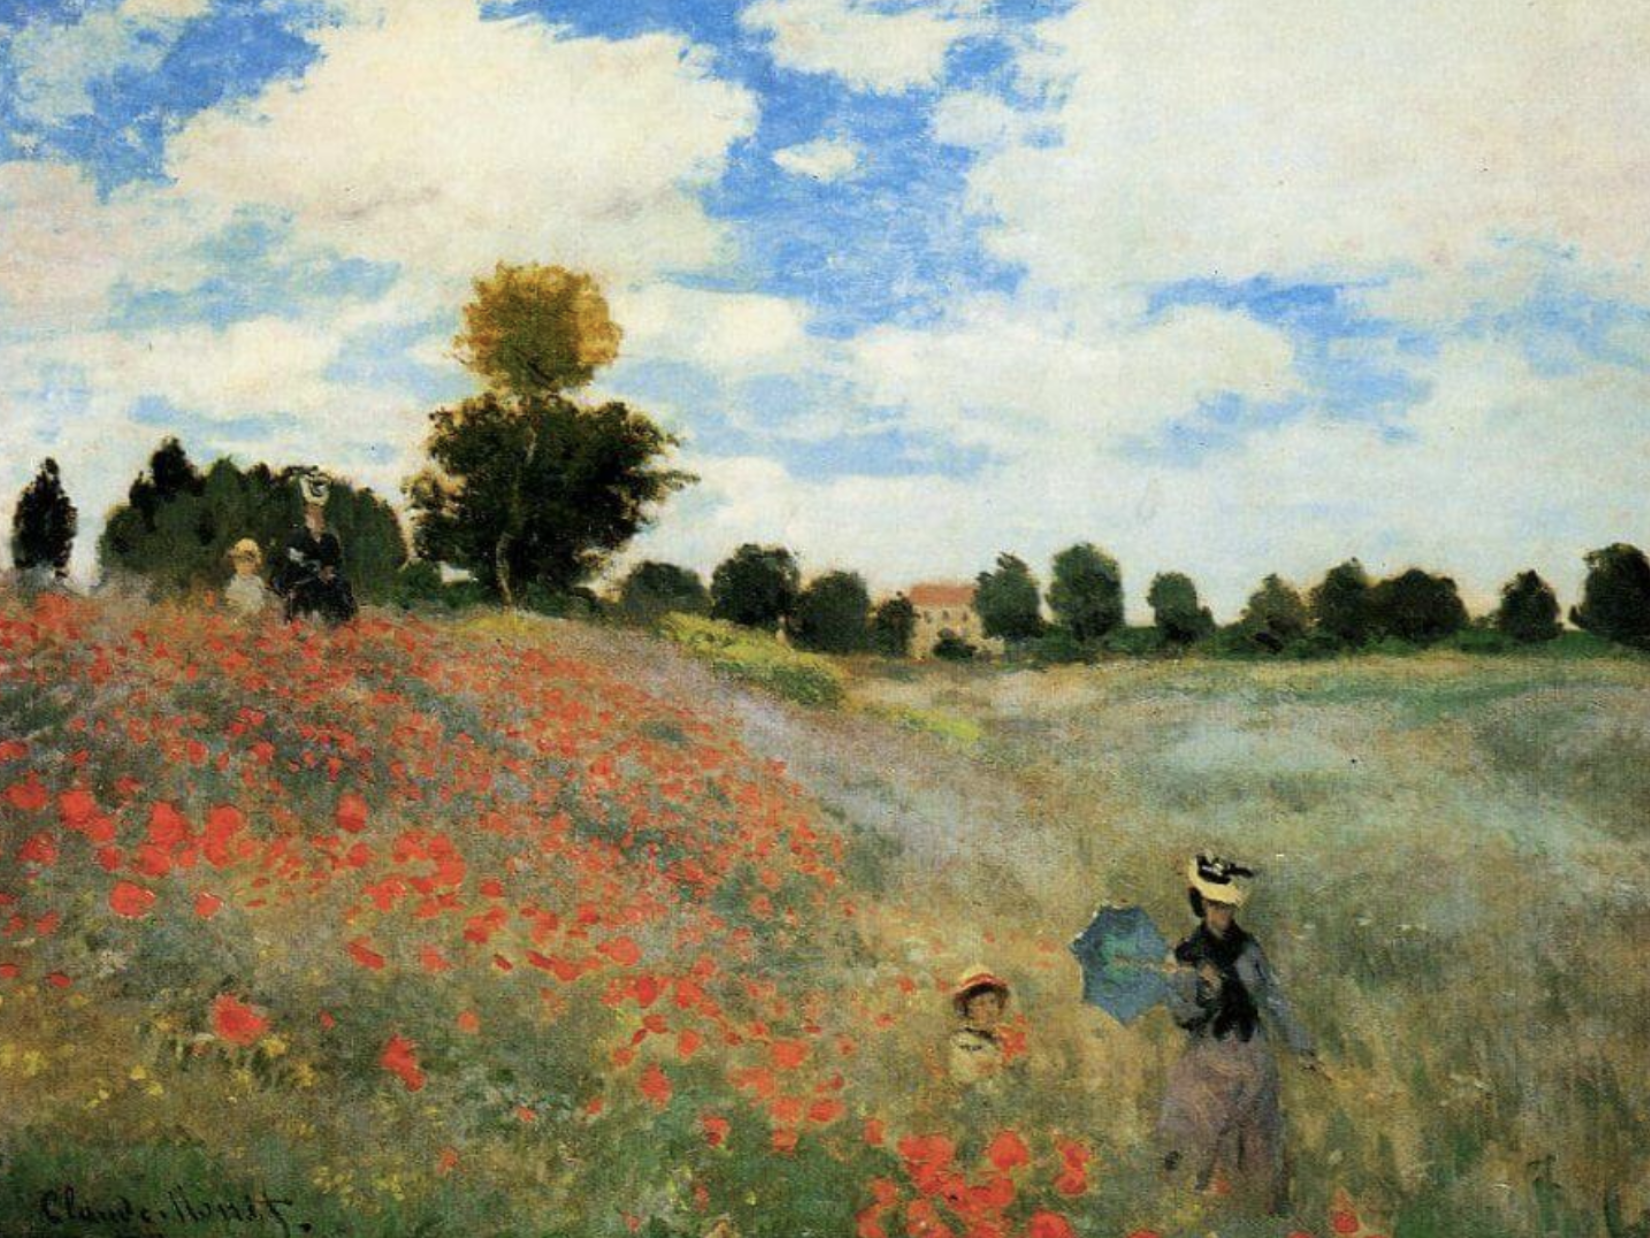 Poppy Fields near Argenteuil, 1873 by Claude Monet.